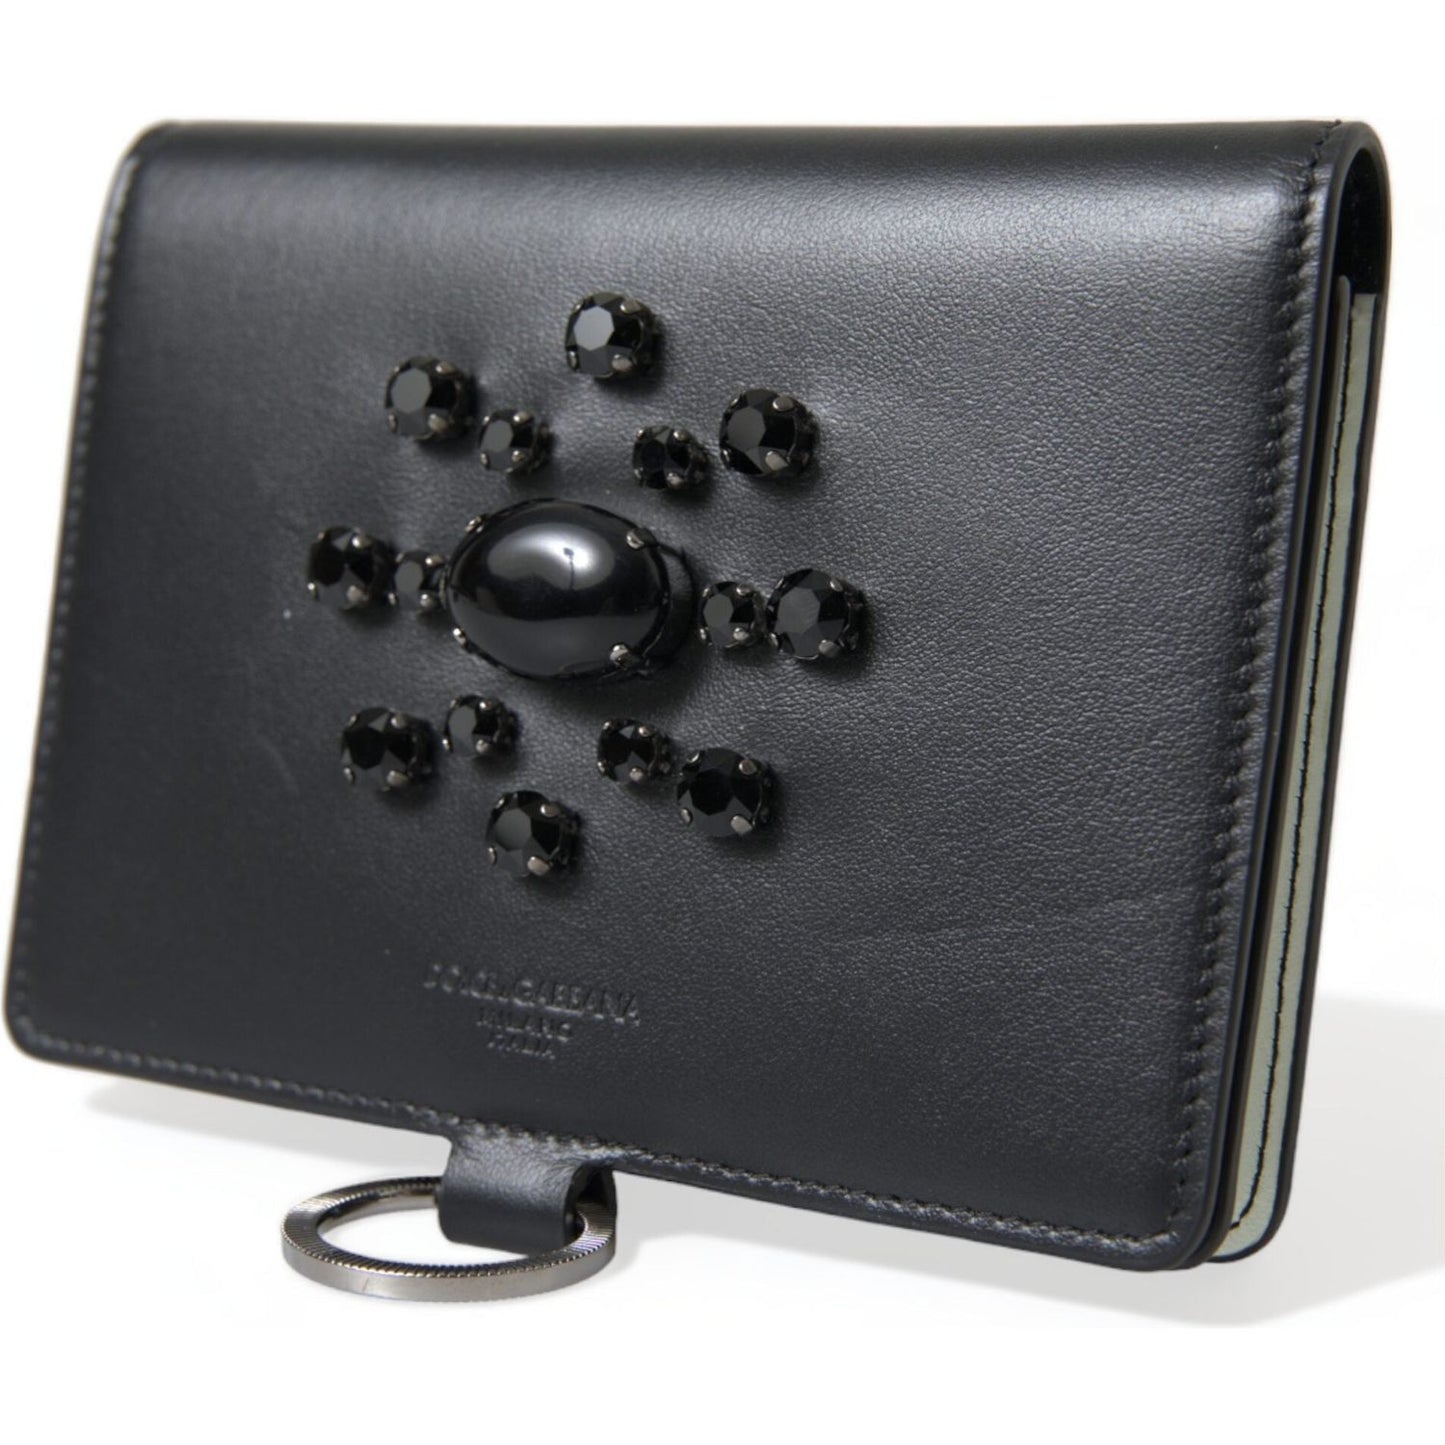 Dolce & Gabbana Elegant Black Leather Crystal Card Holder Wallet black-leather-crystal-embellished-card-holder-wallet